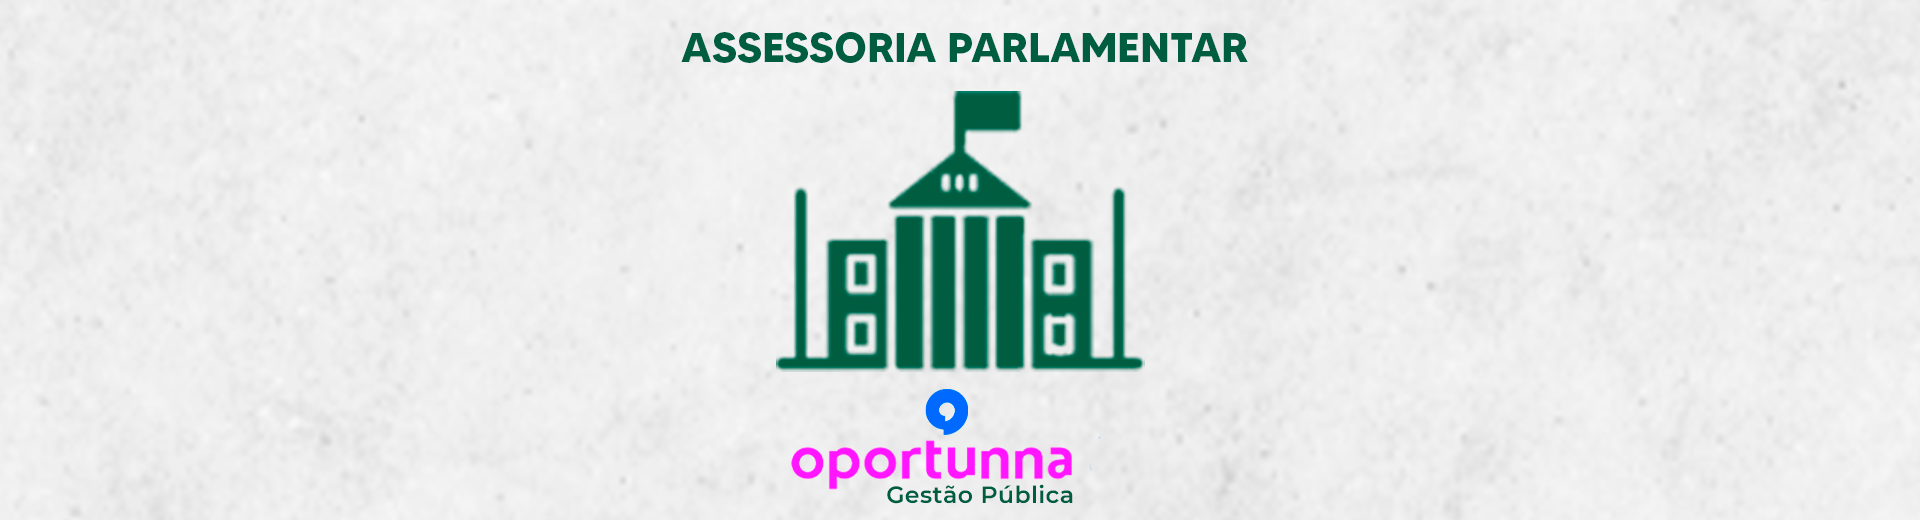 Banner Desktop Assessoria Parlamentar